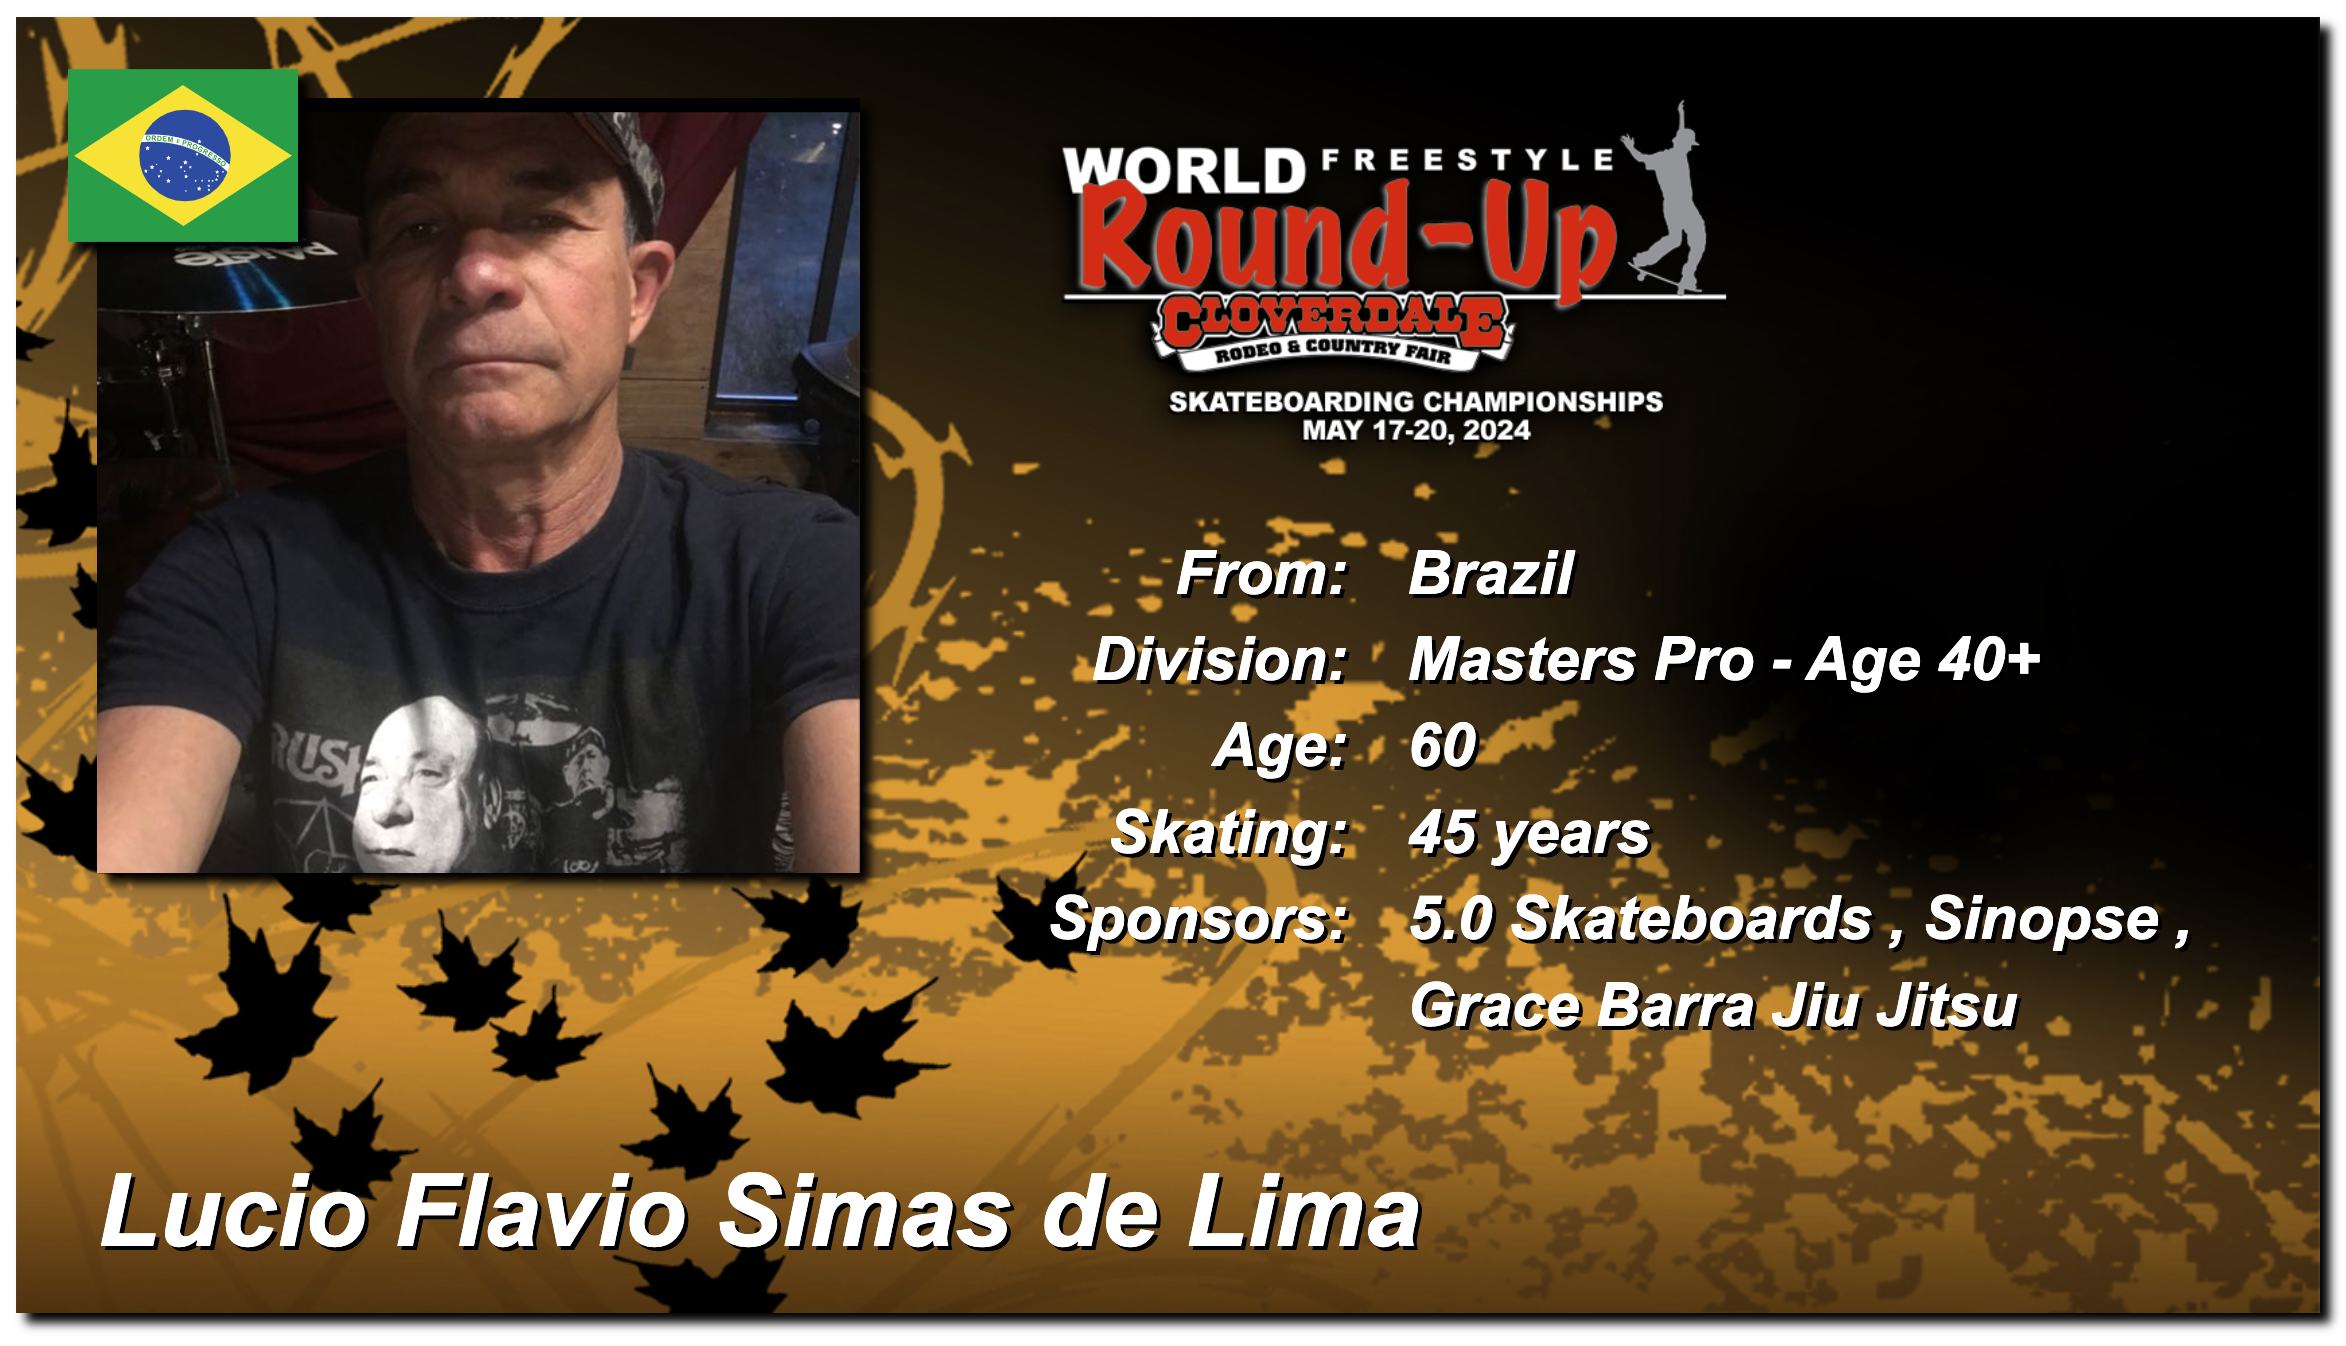 Lucio Flavio Simas de Lima